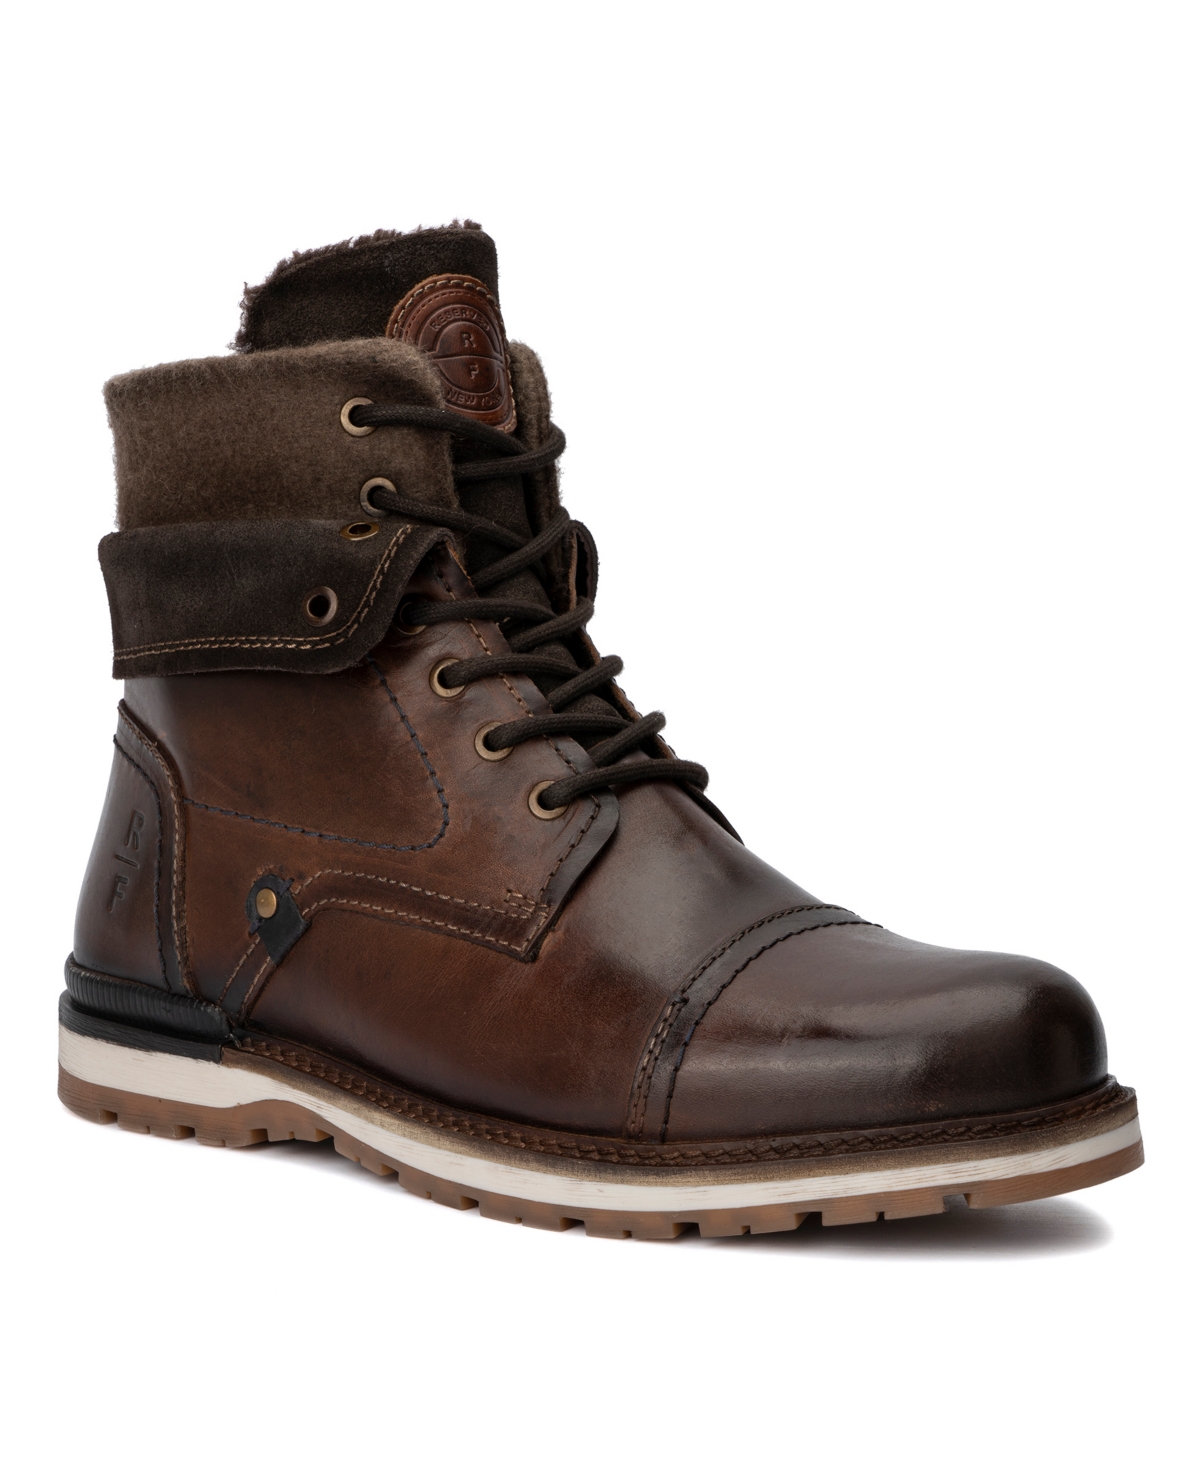 Men's Haziel Boots - Brown